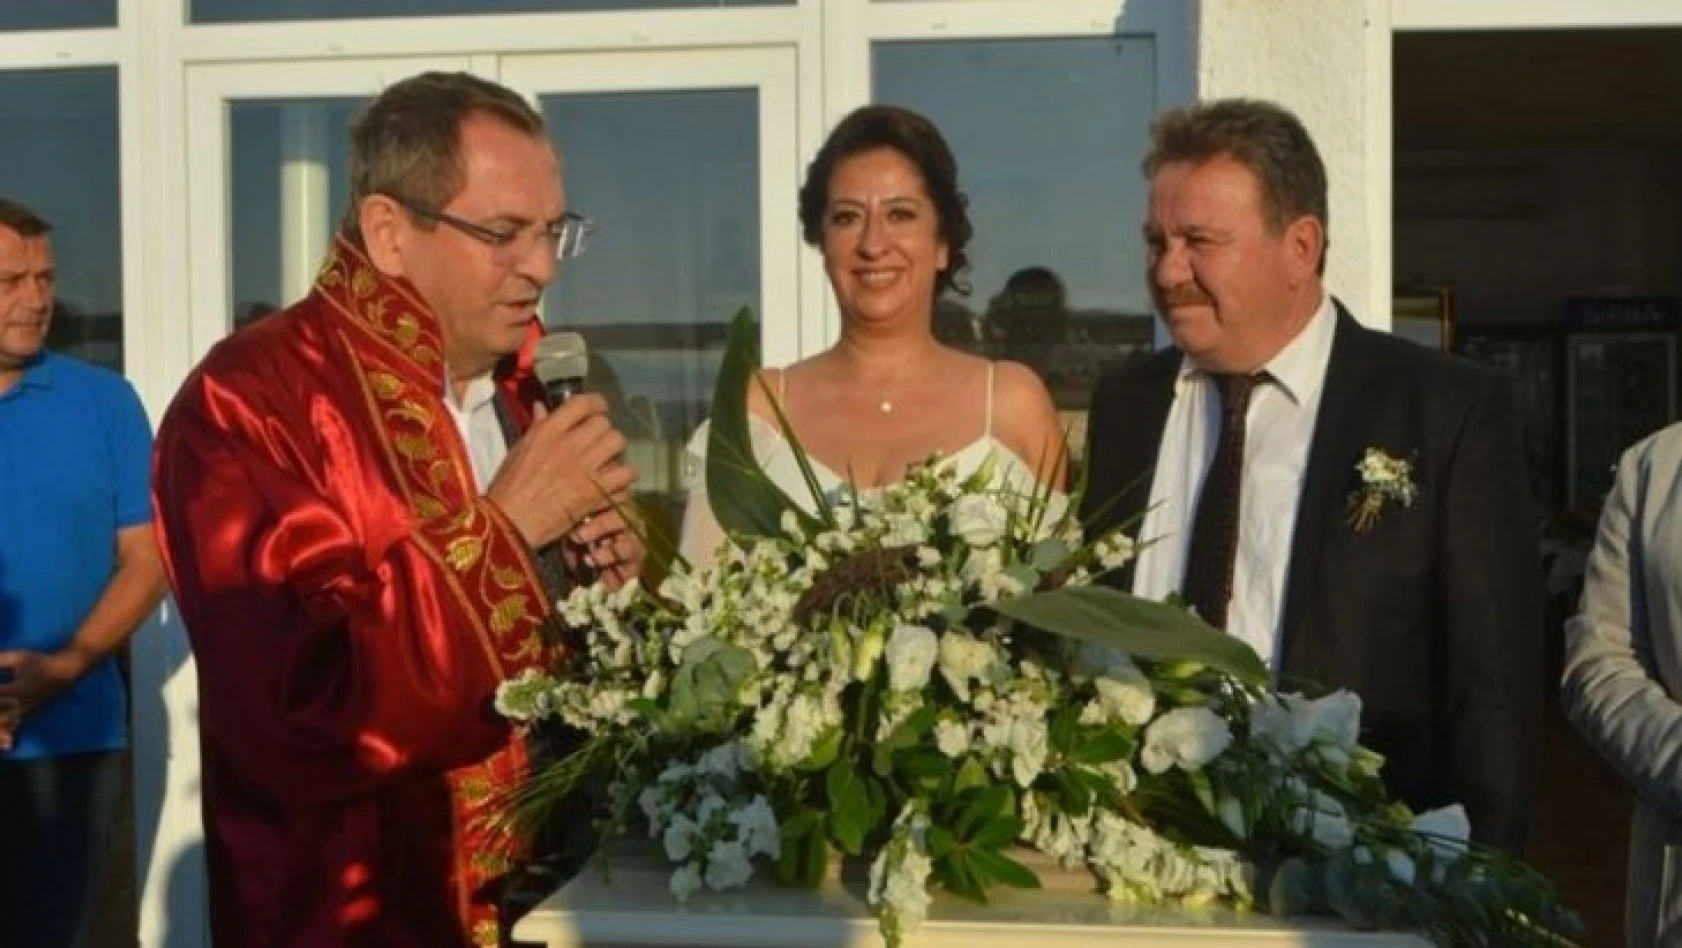 Oyuncu Serhat Özcan, Deniz İpek ile evlendi